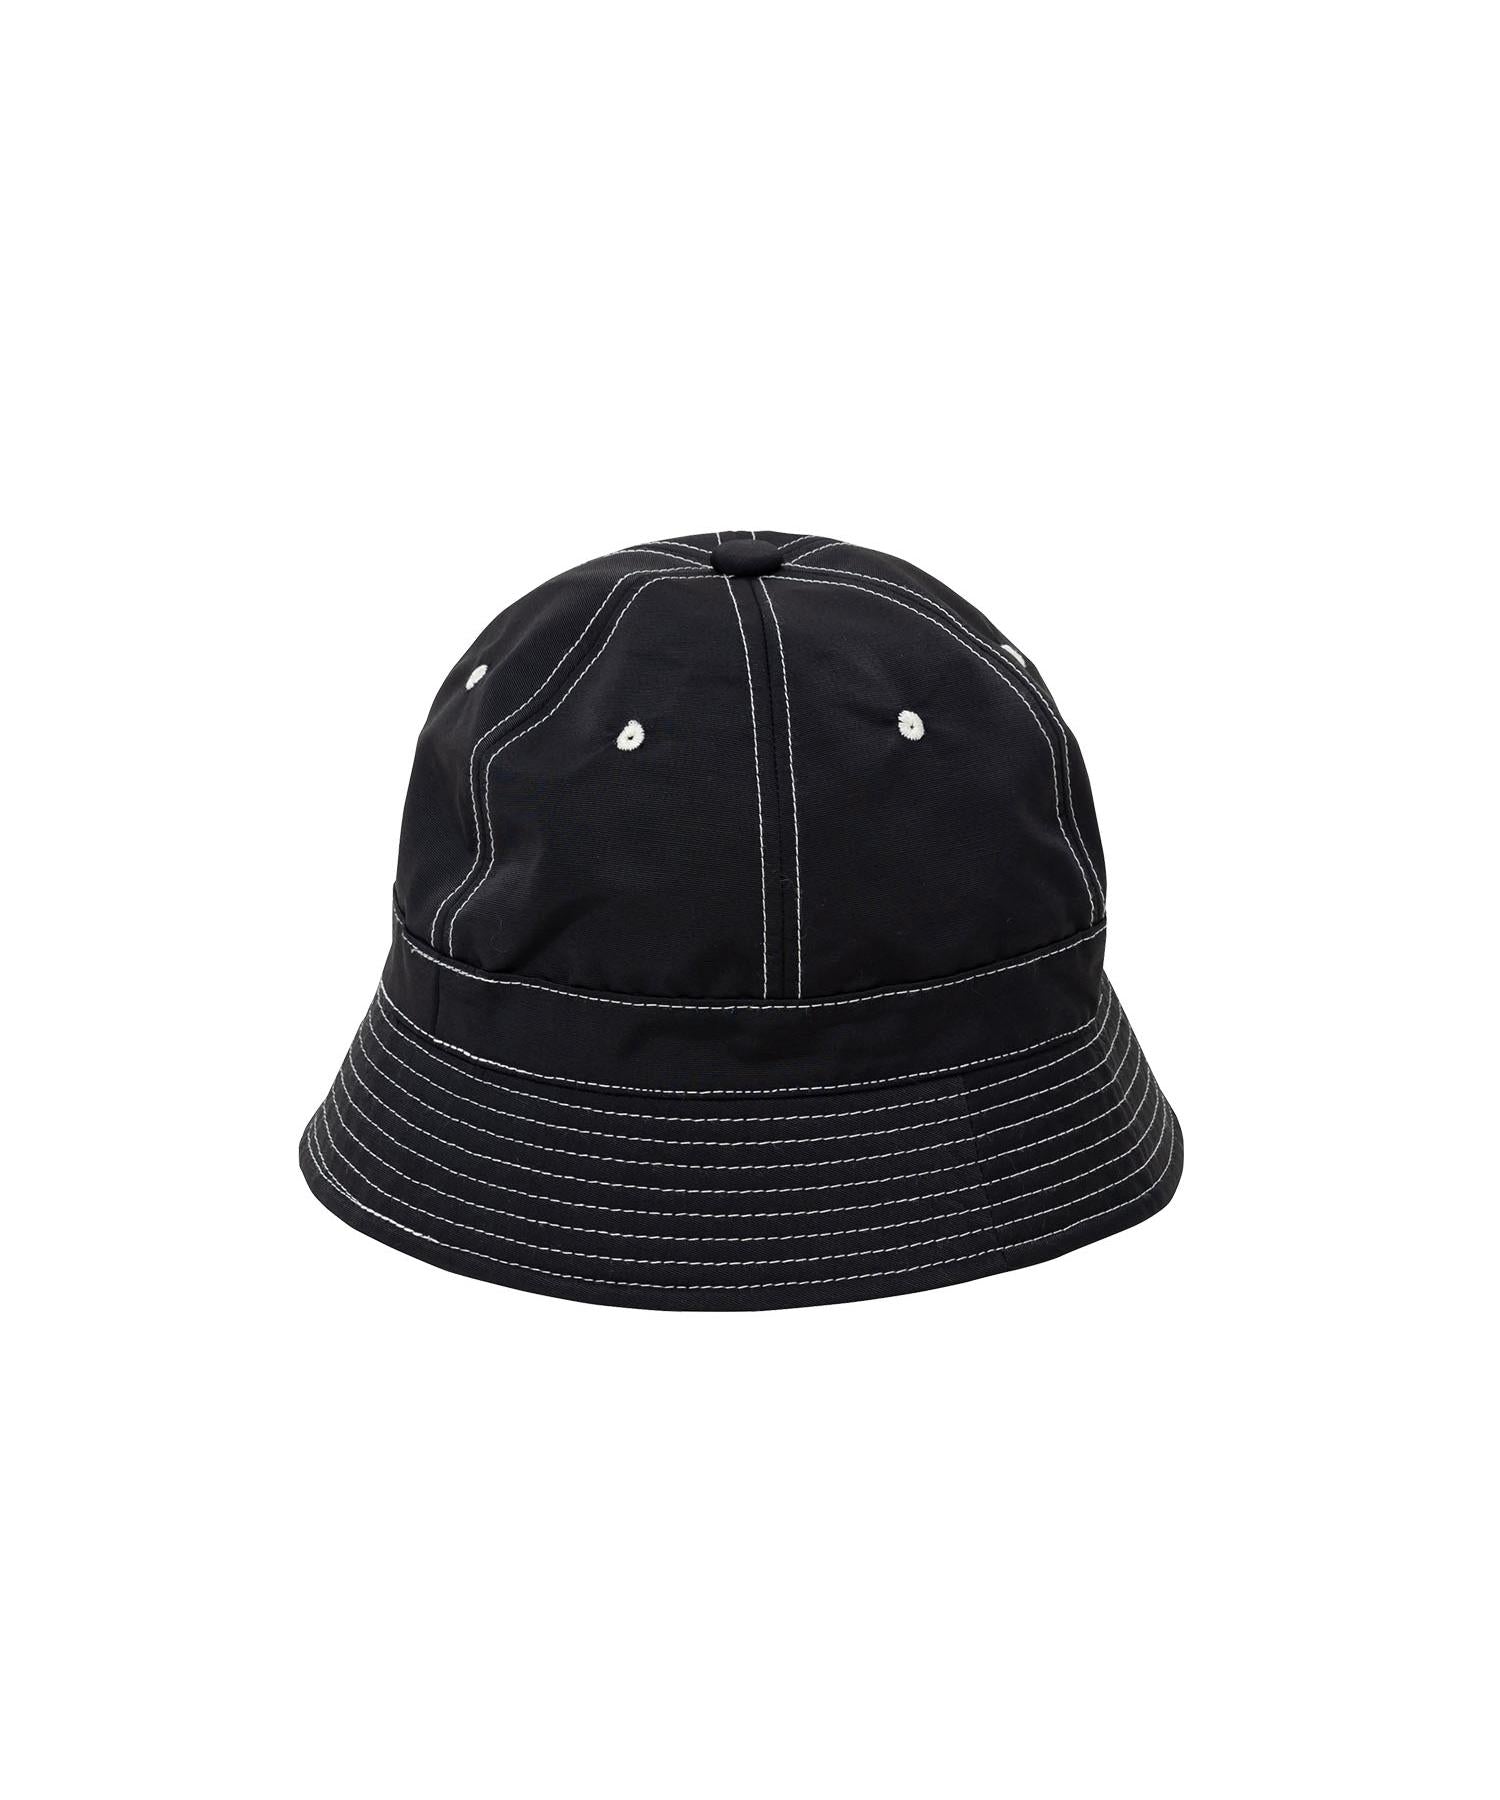 Cordura@Bellcap Hat